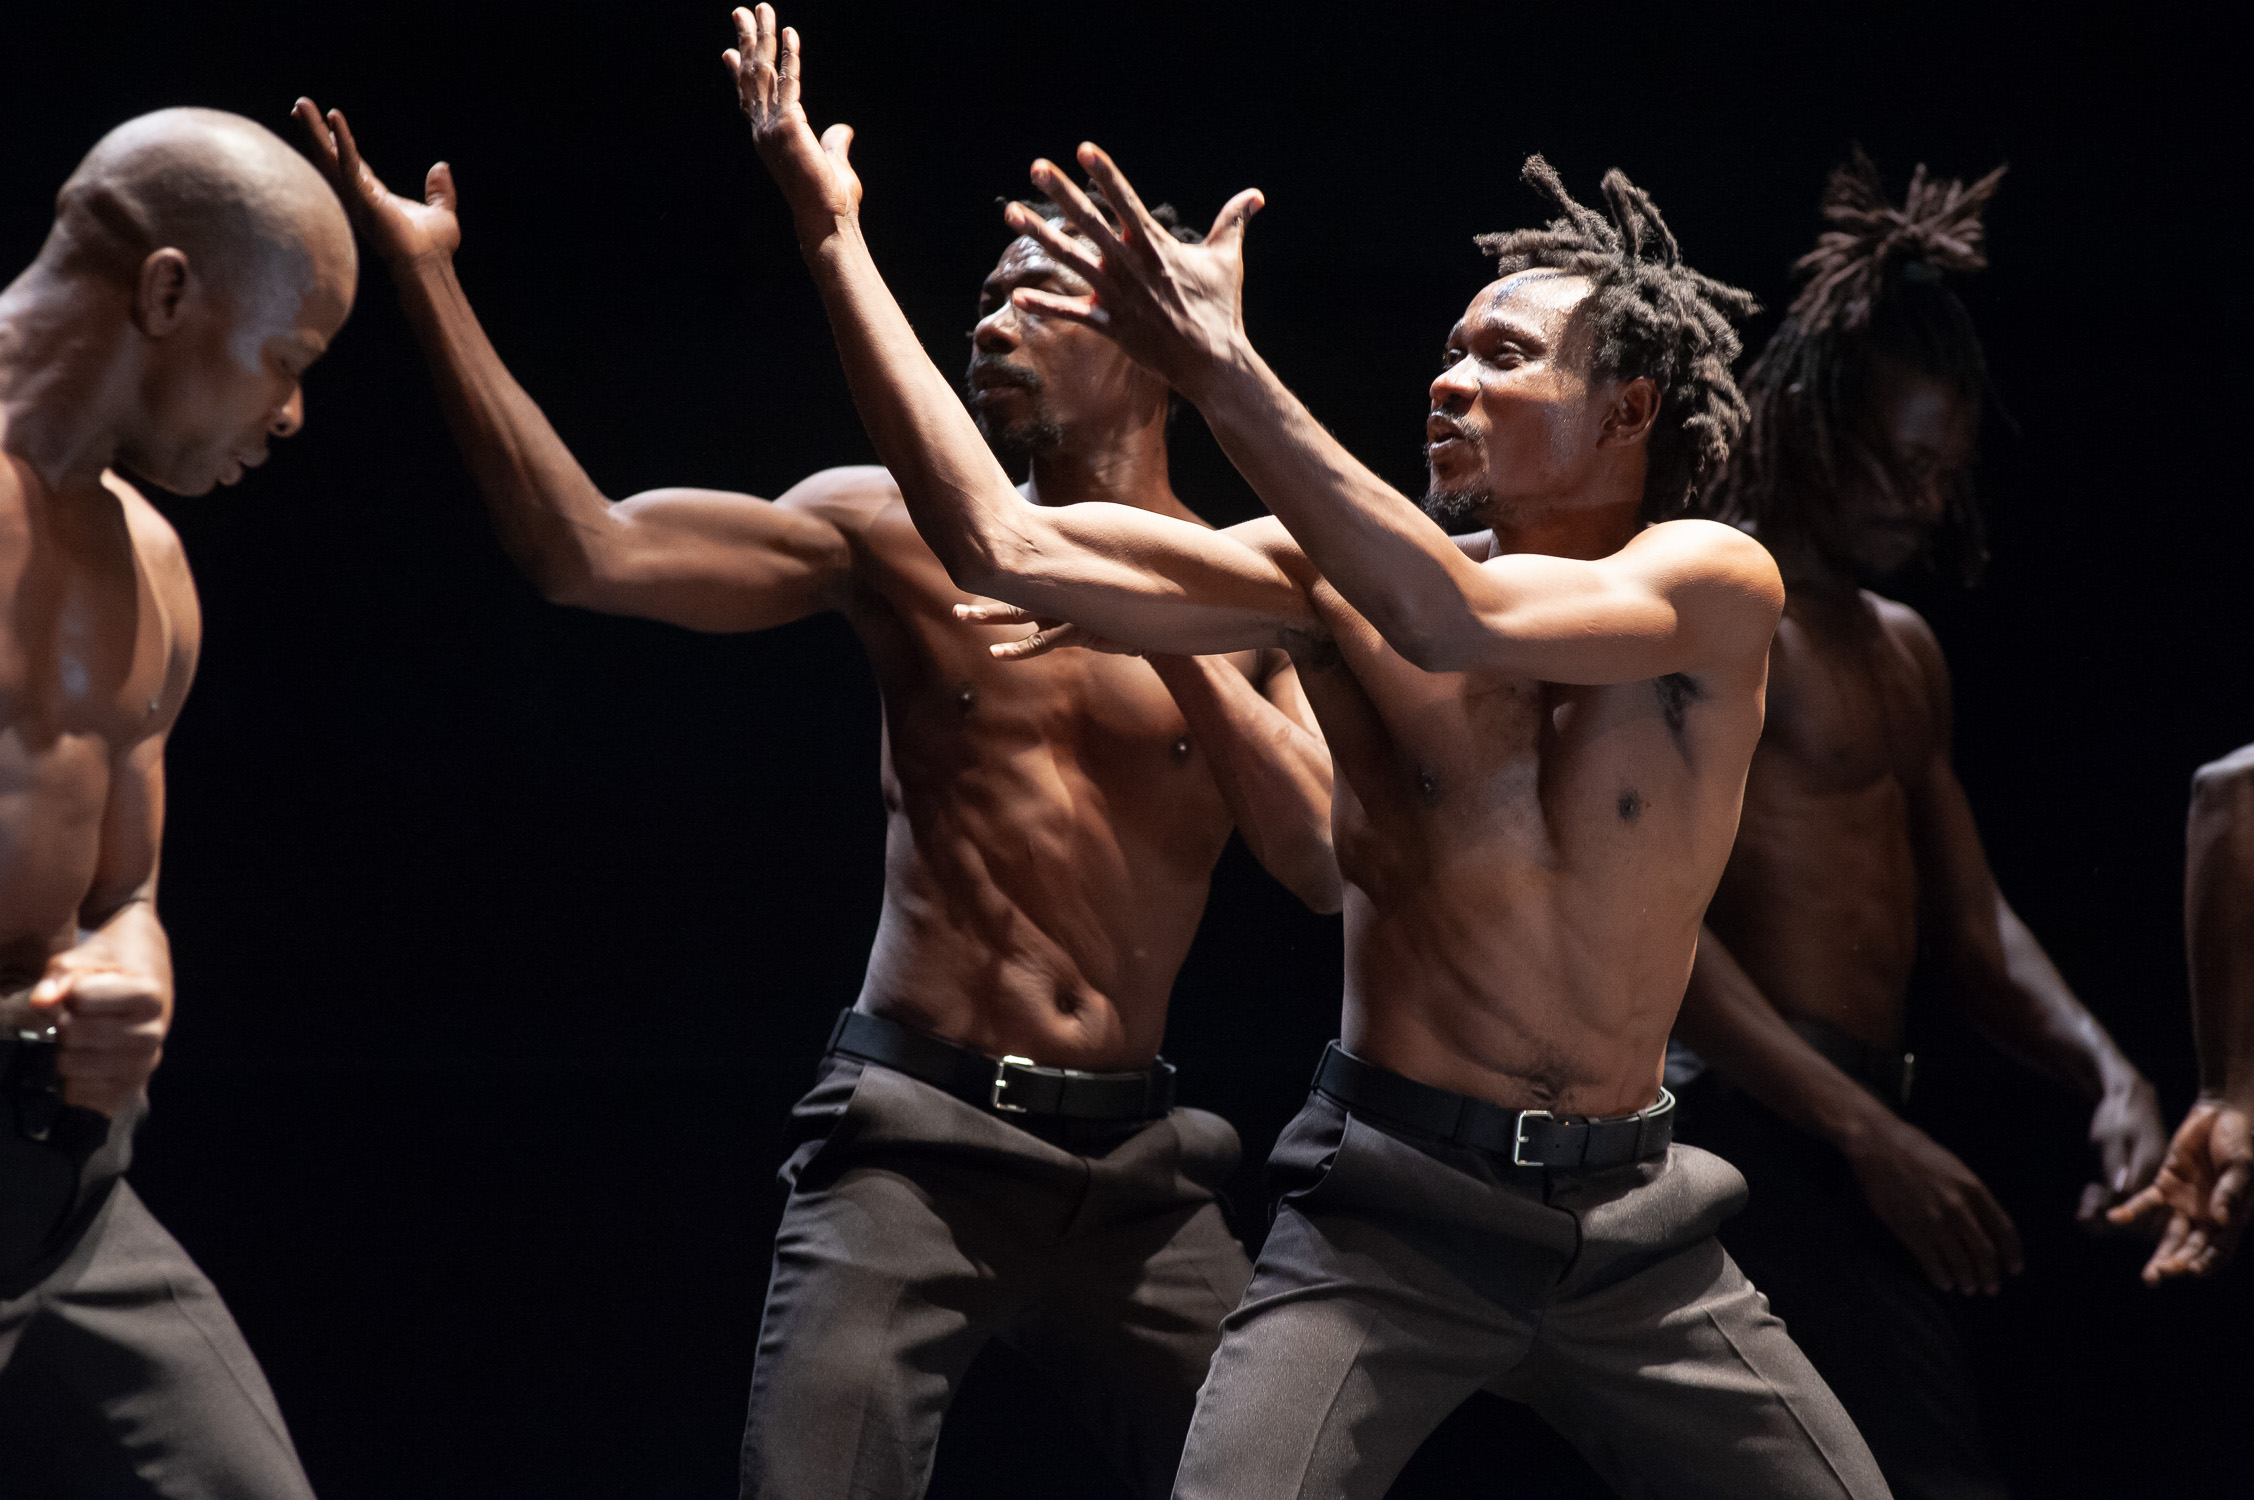     Biennale internationale de danse 2022 : Omma de Josef Nadj, une ode à l'humanité 

